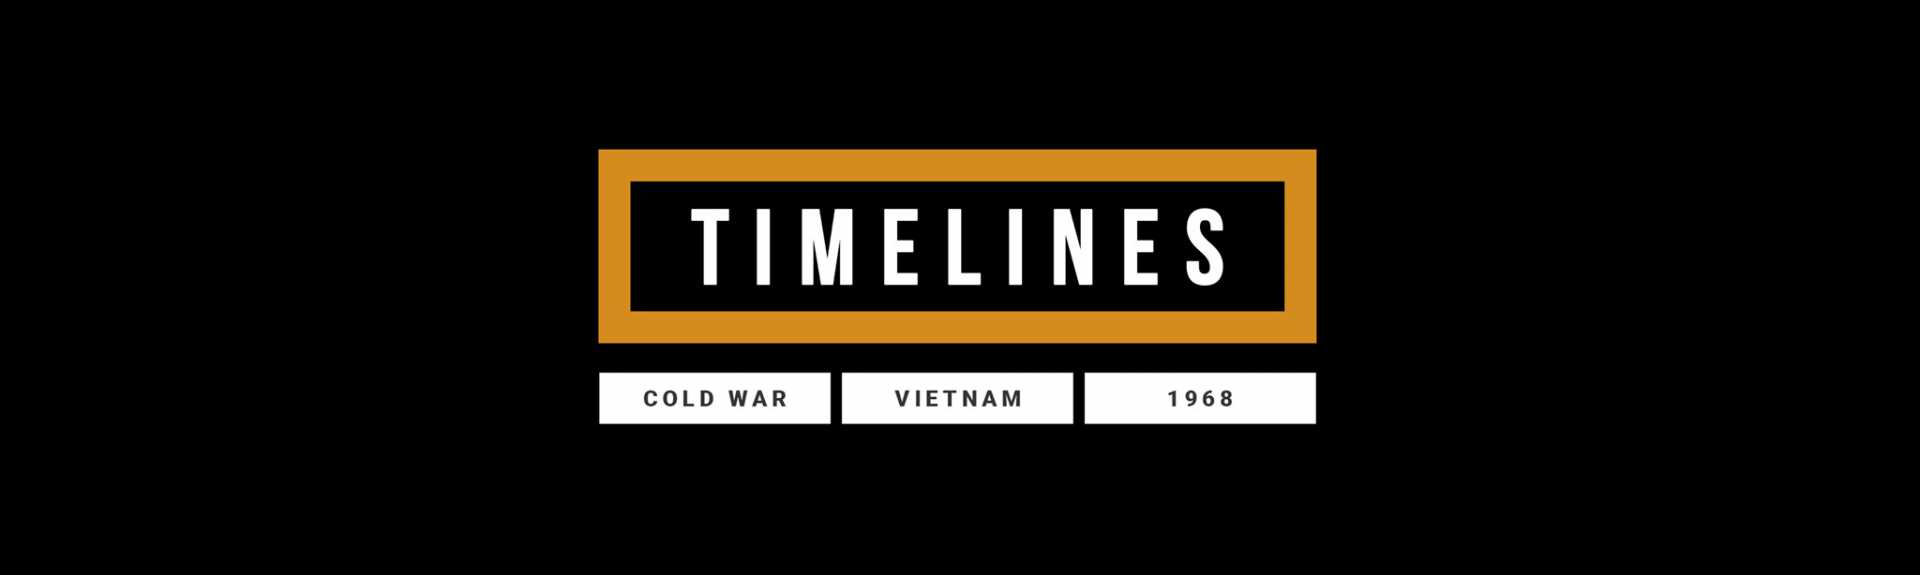 Timelines: Cold War, Vietnam & 1968